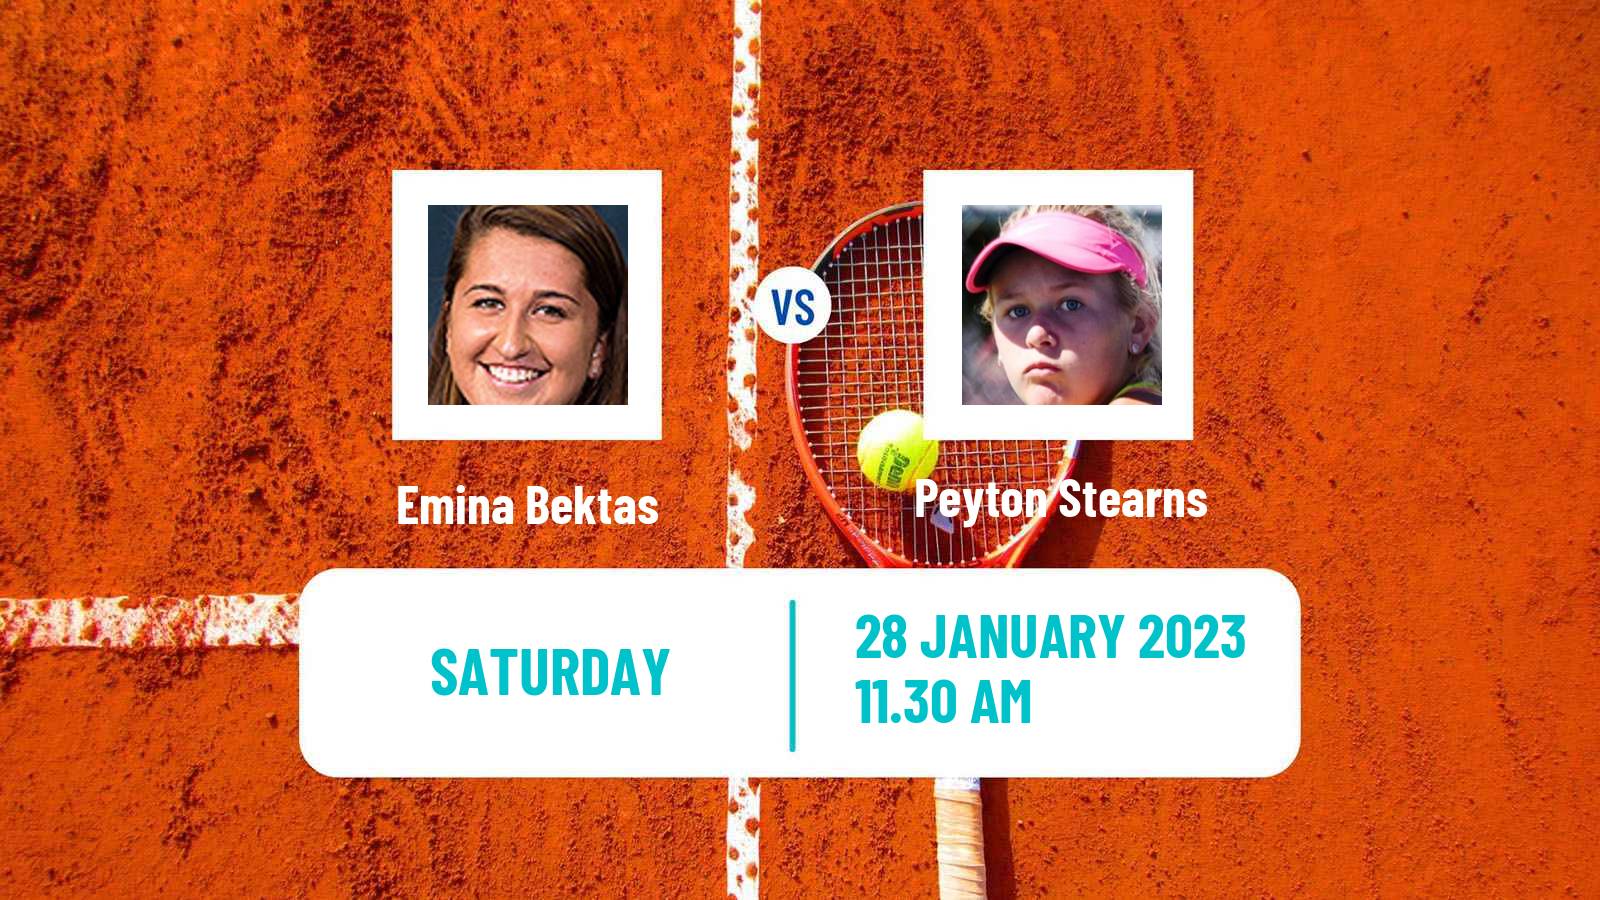 Tennis ITF Tournaments Emina Bektas - Peyton Stearns